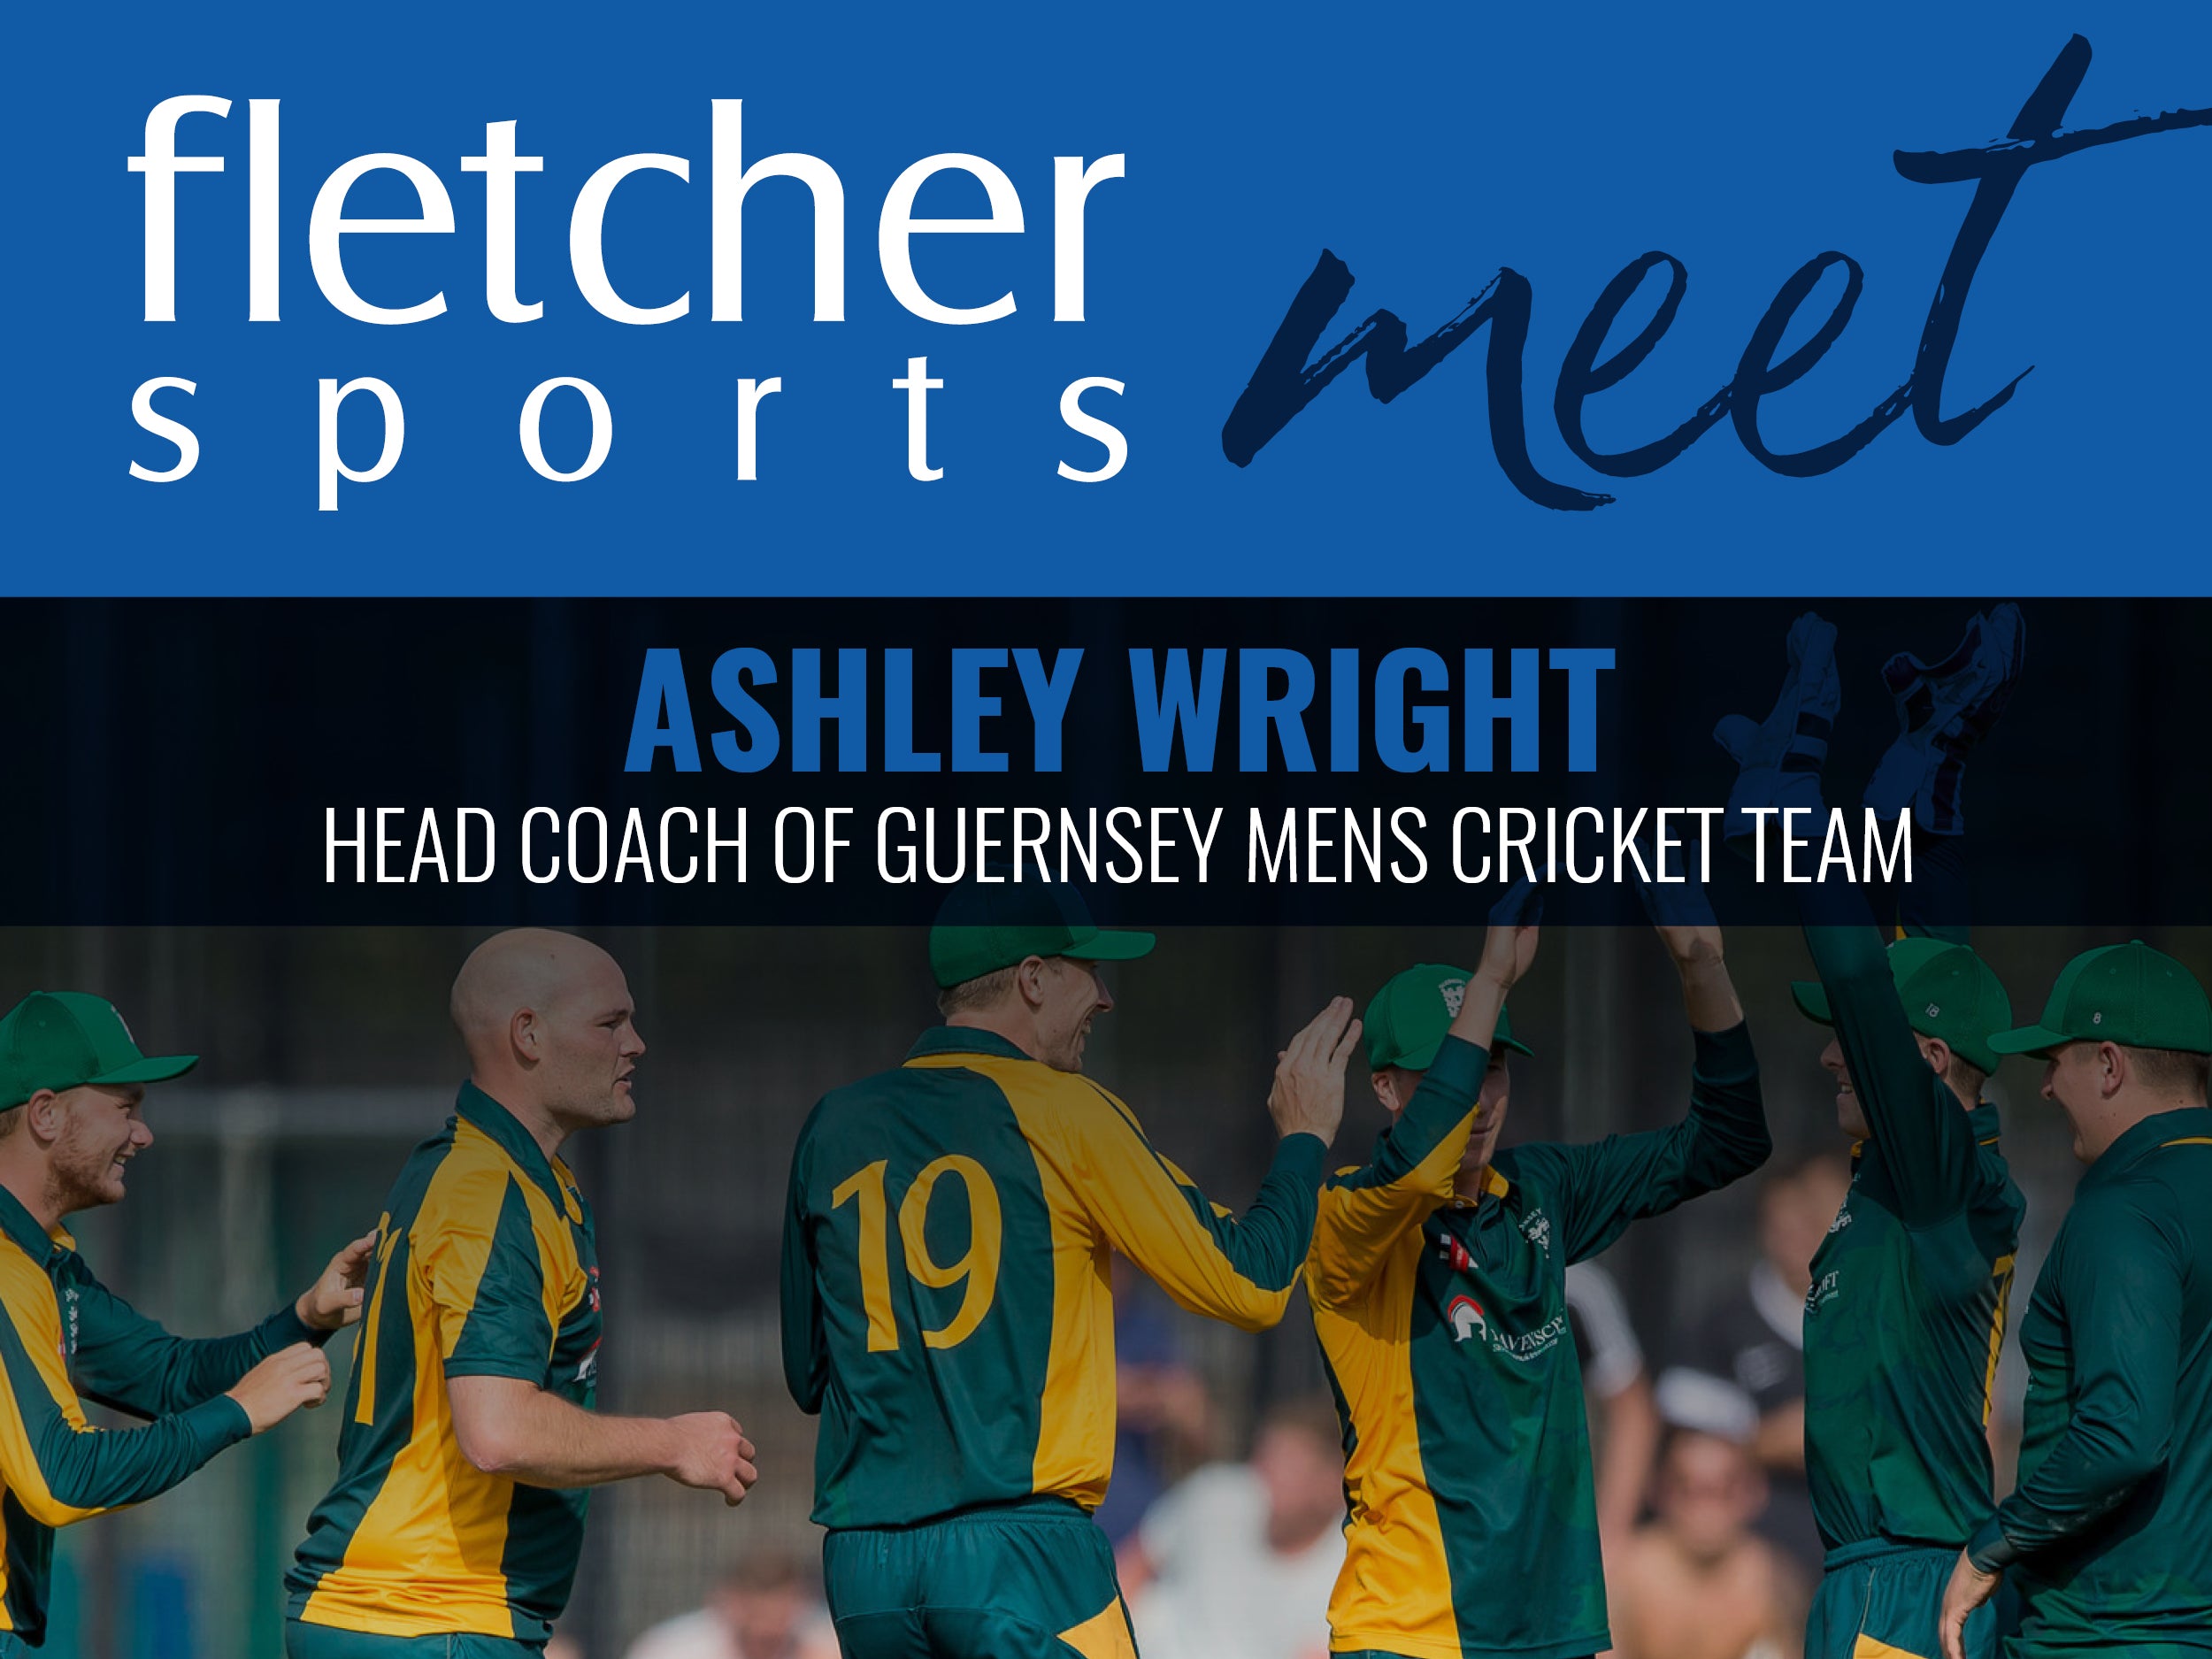 Fletcher Sports meet Ashley Wright